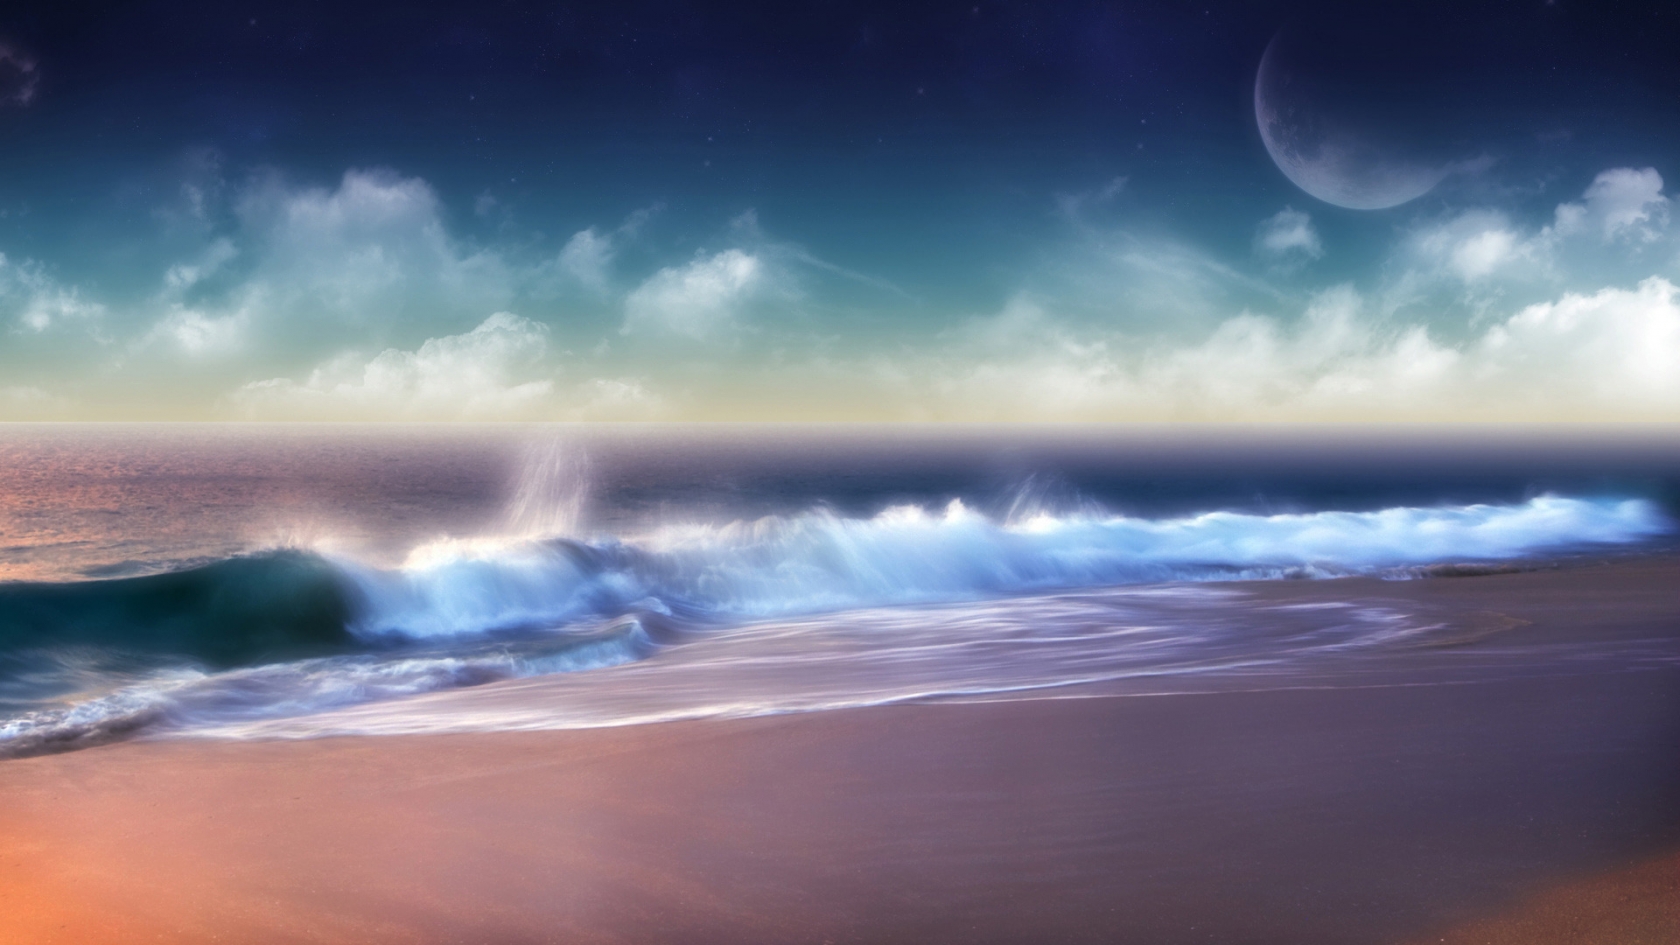 Superb Ocean Sunset for 1680 x 945 HDTV resolution